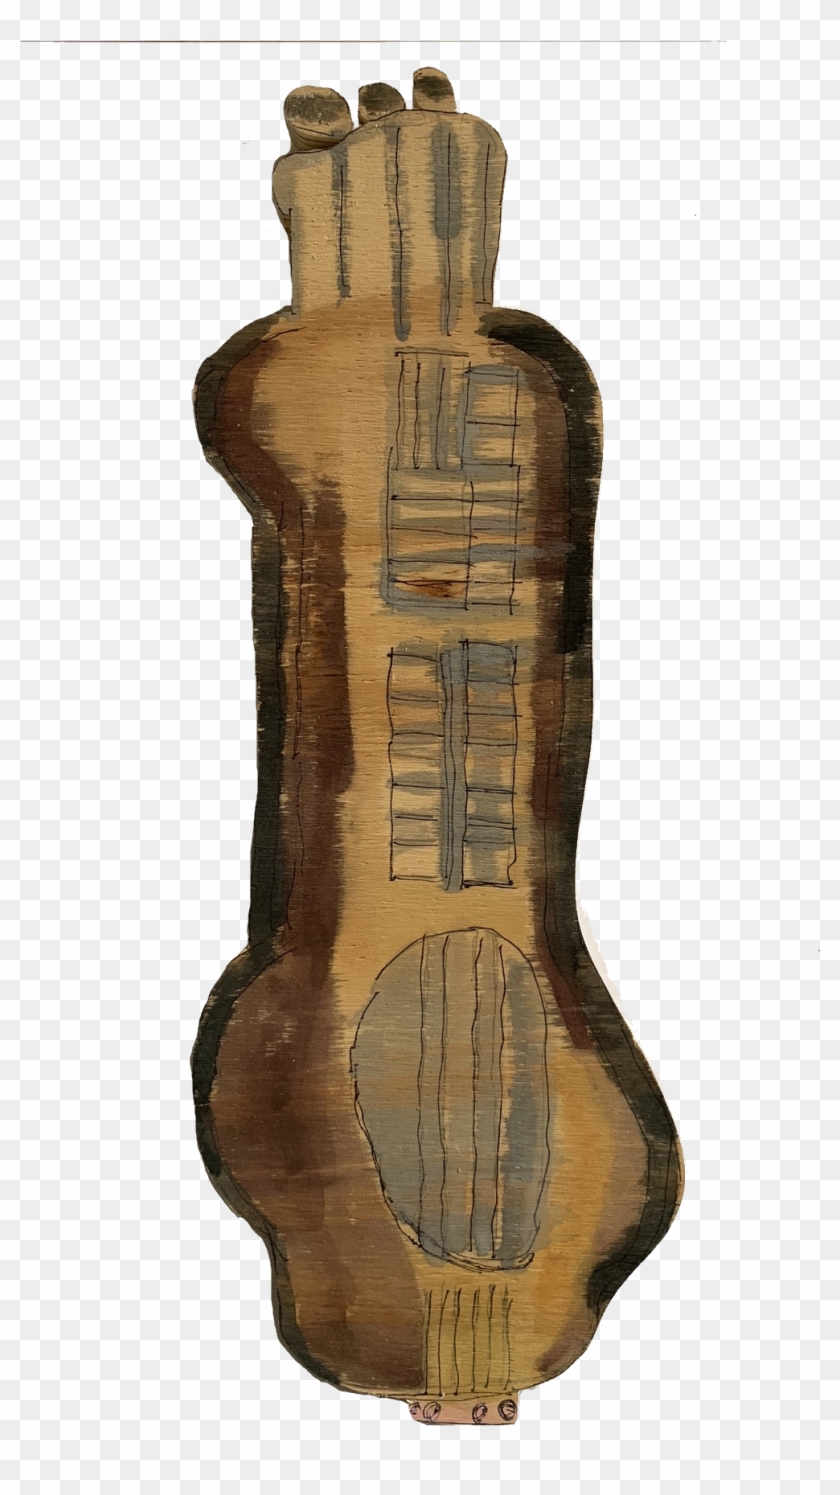 Guitar - Hardwood Clipart #1895763